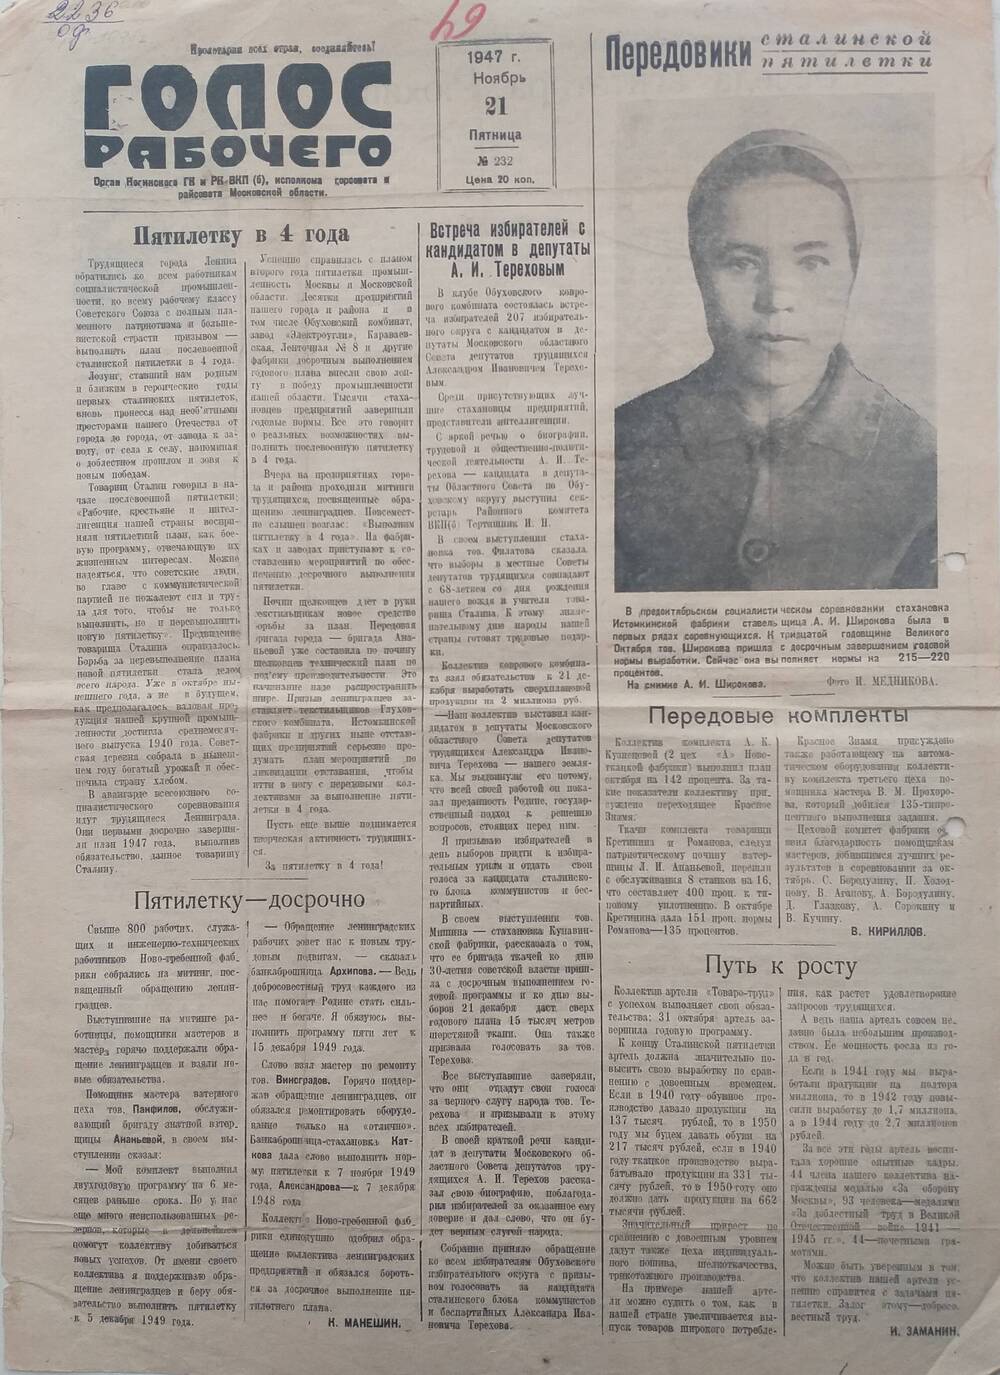 Газета Голос рабочего № 232, орган Ногинского ГК и РК ВКП (б), исполкома горсовета и райсовета Московской области, от 
21 ноября 1947 года.